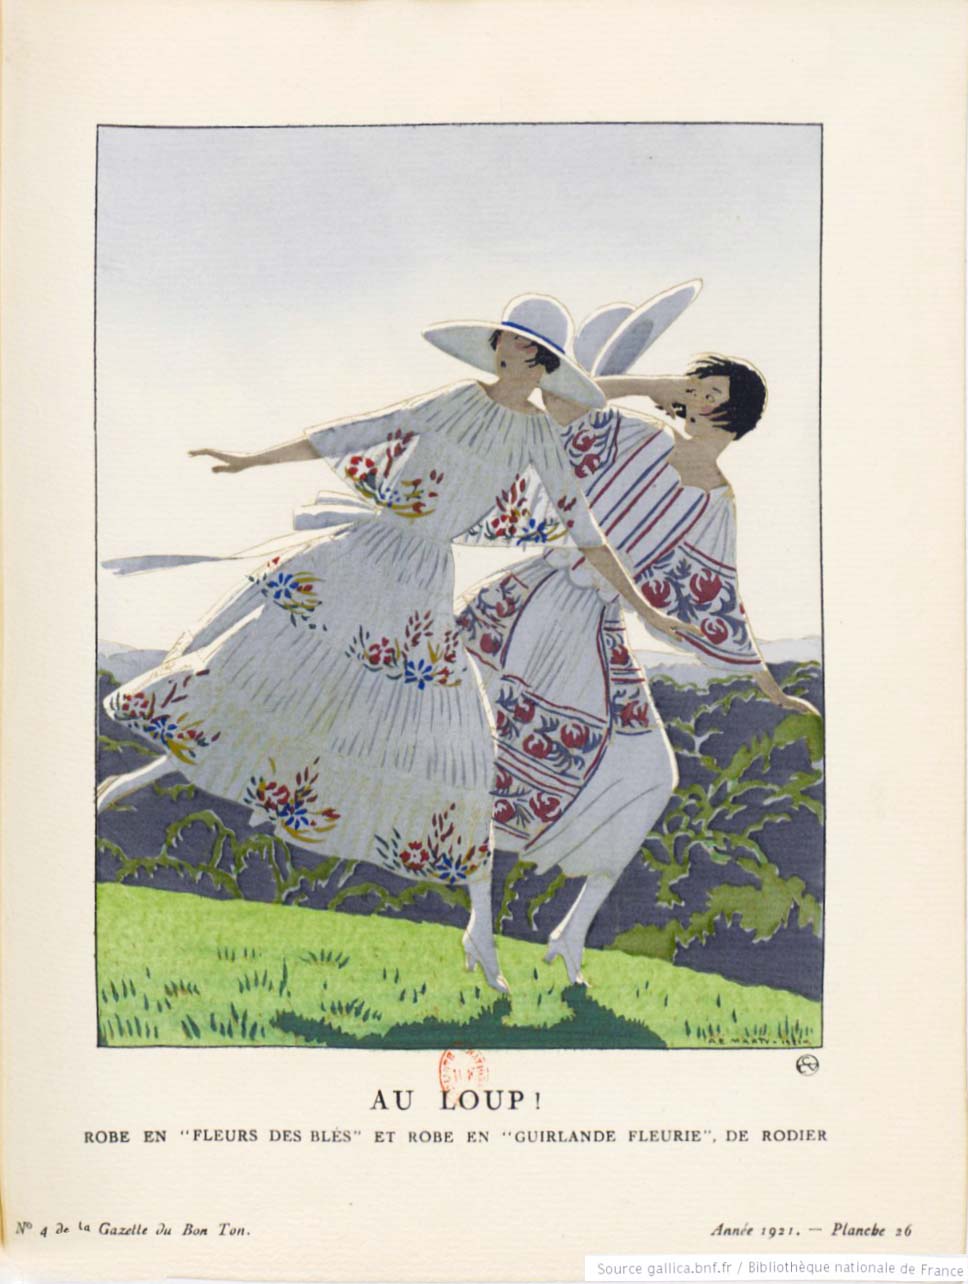 The original Au Loup! by André Édouard Marty